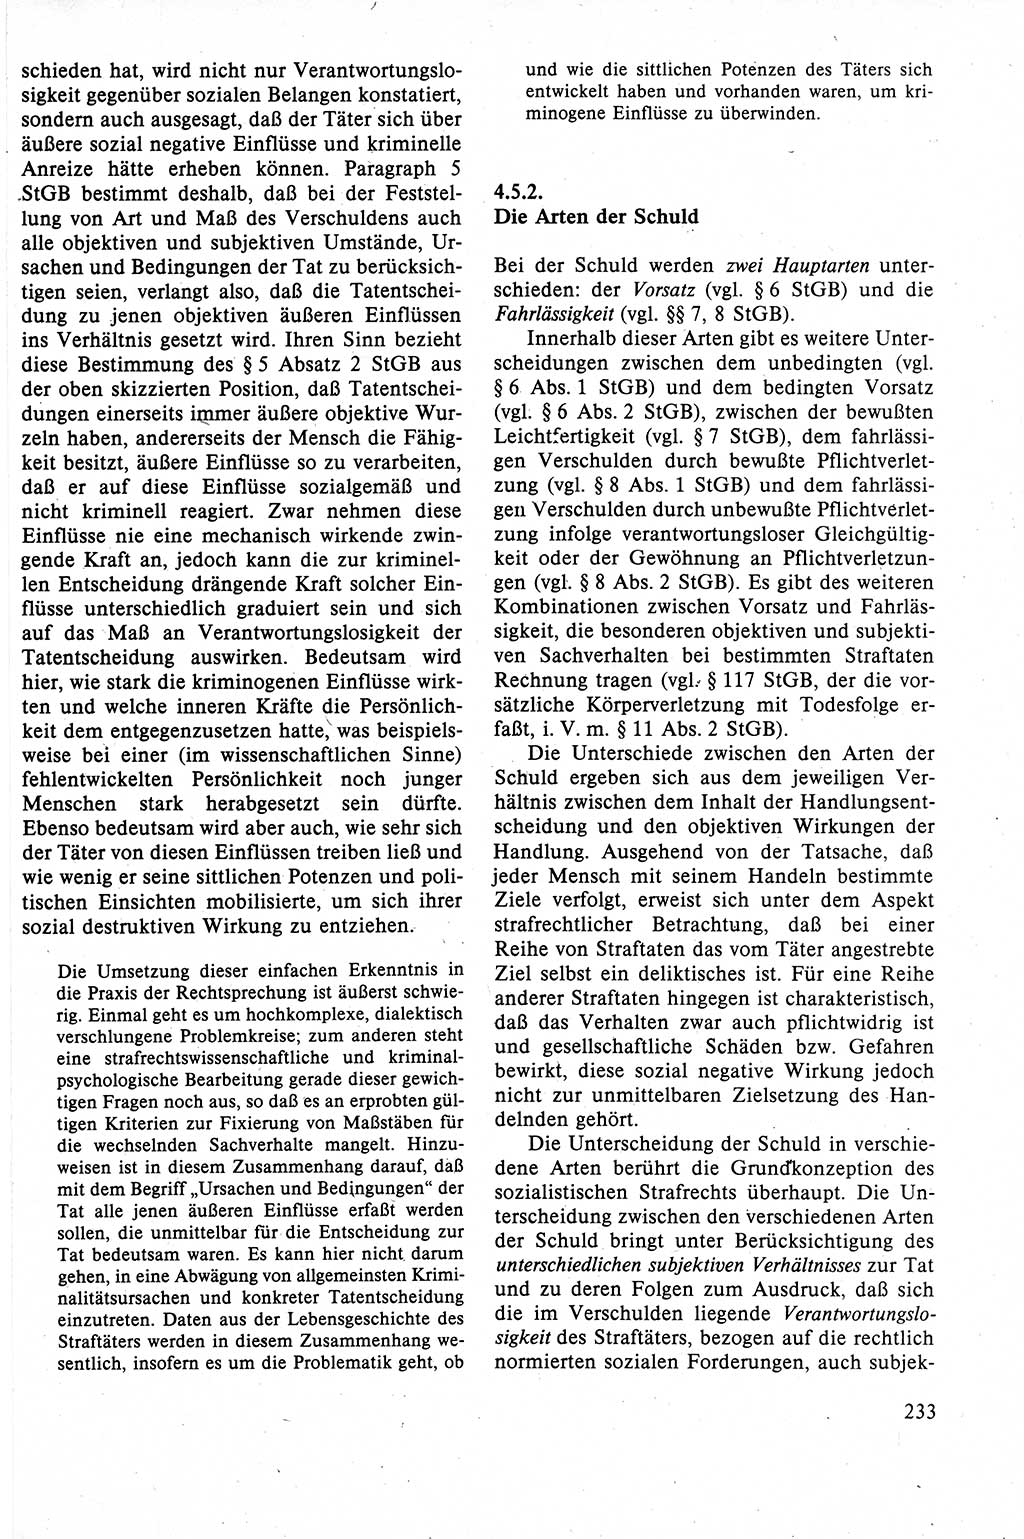 Strafrecht der DDR (Deutsche Demokratische Republik), Lehrbuch 1988, Seite 233 (Strafr. DDR Lb. 1988, S. 233)